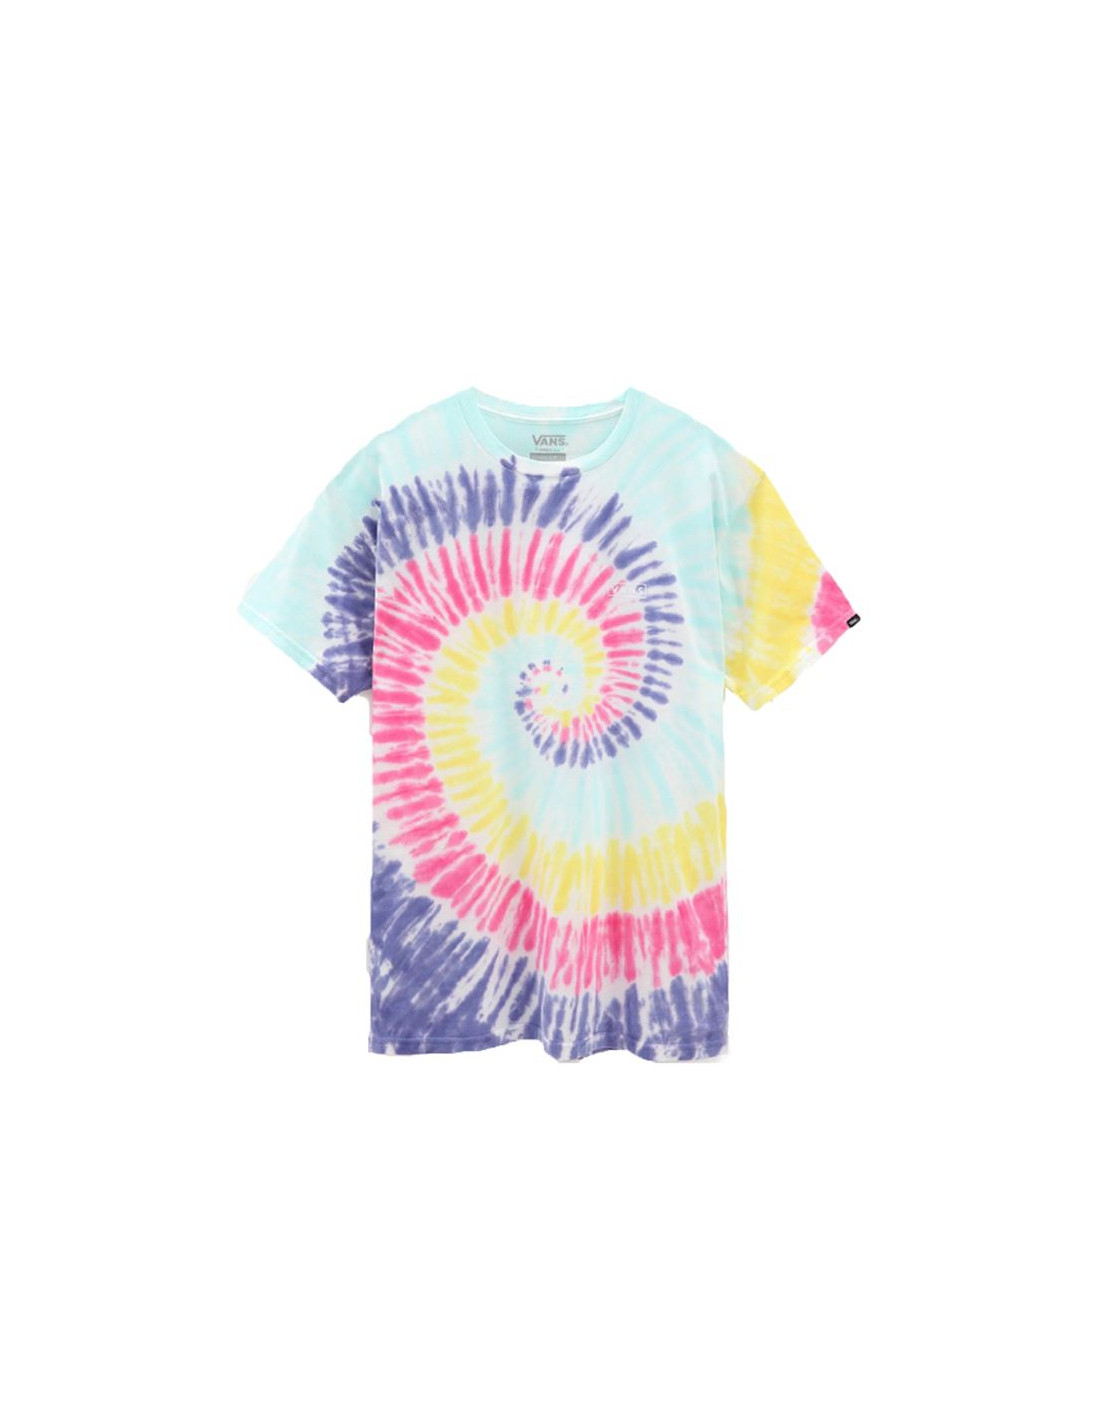 Camiseta sportswear vans reainbow spiral